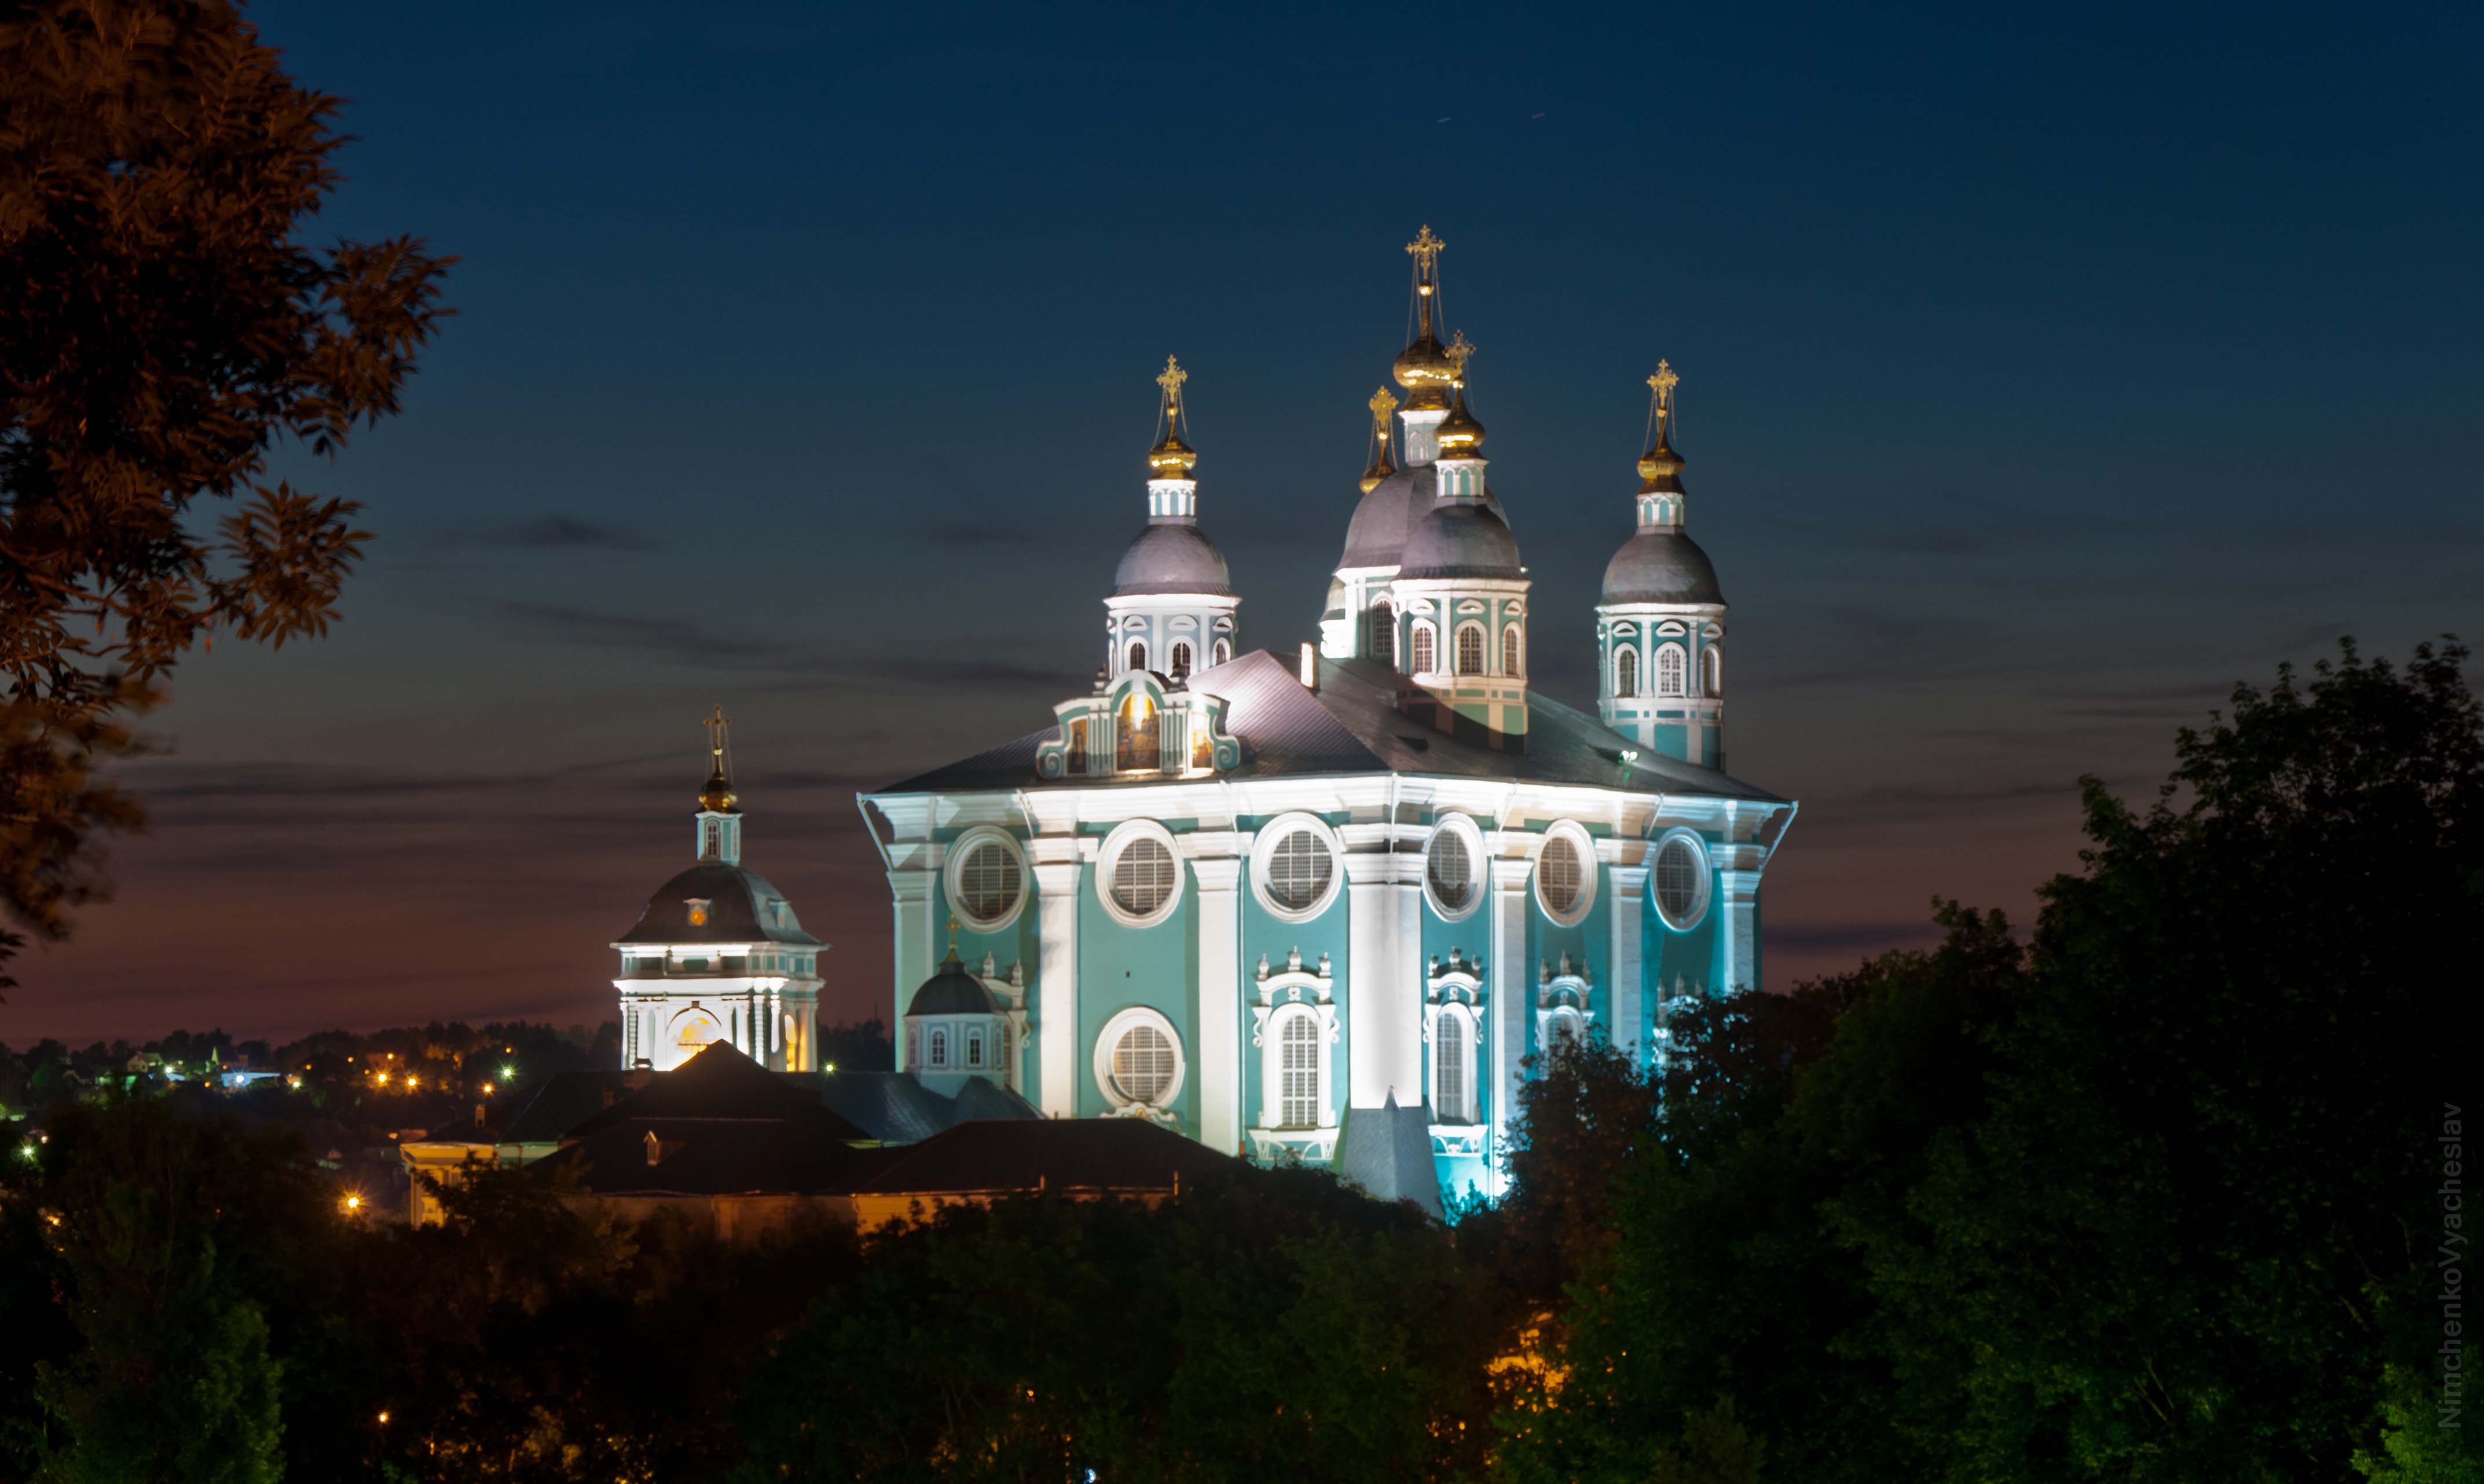 Фотография Успенскоко собора в Смоленске на рассвете, в хорошем качестве